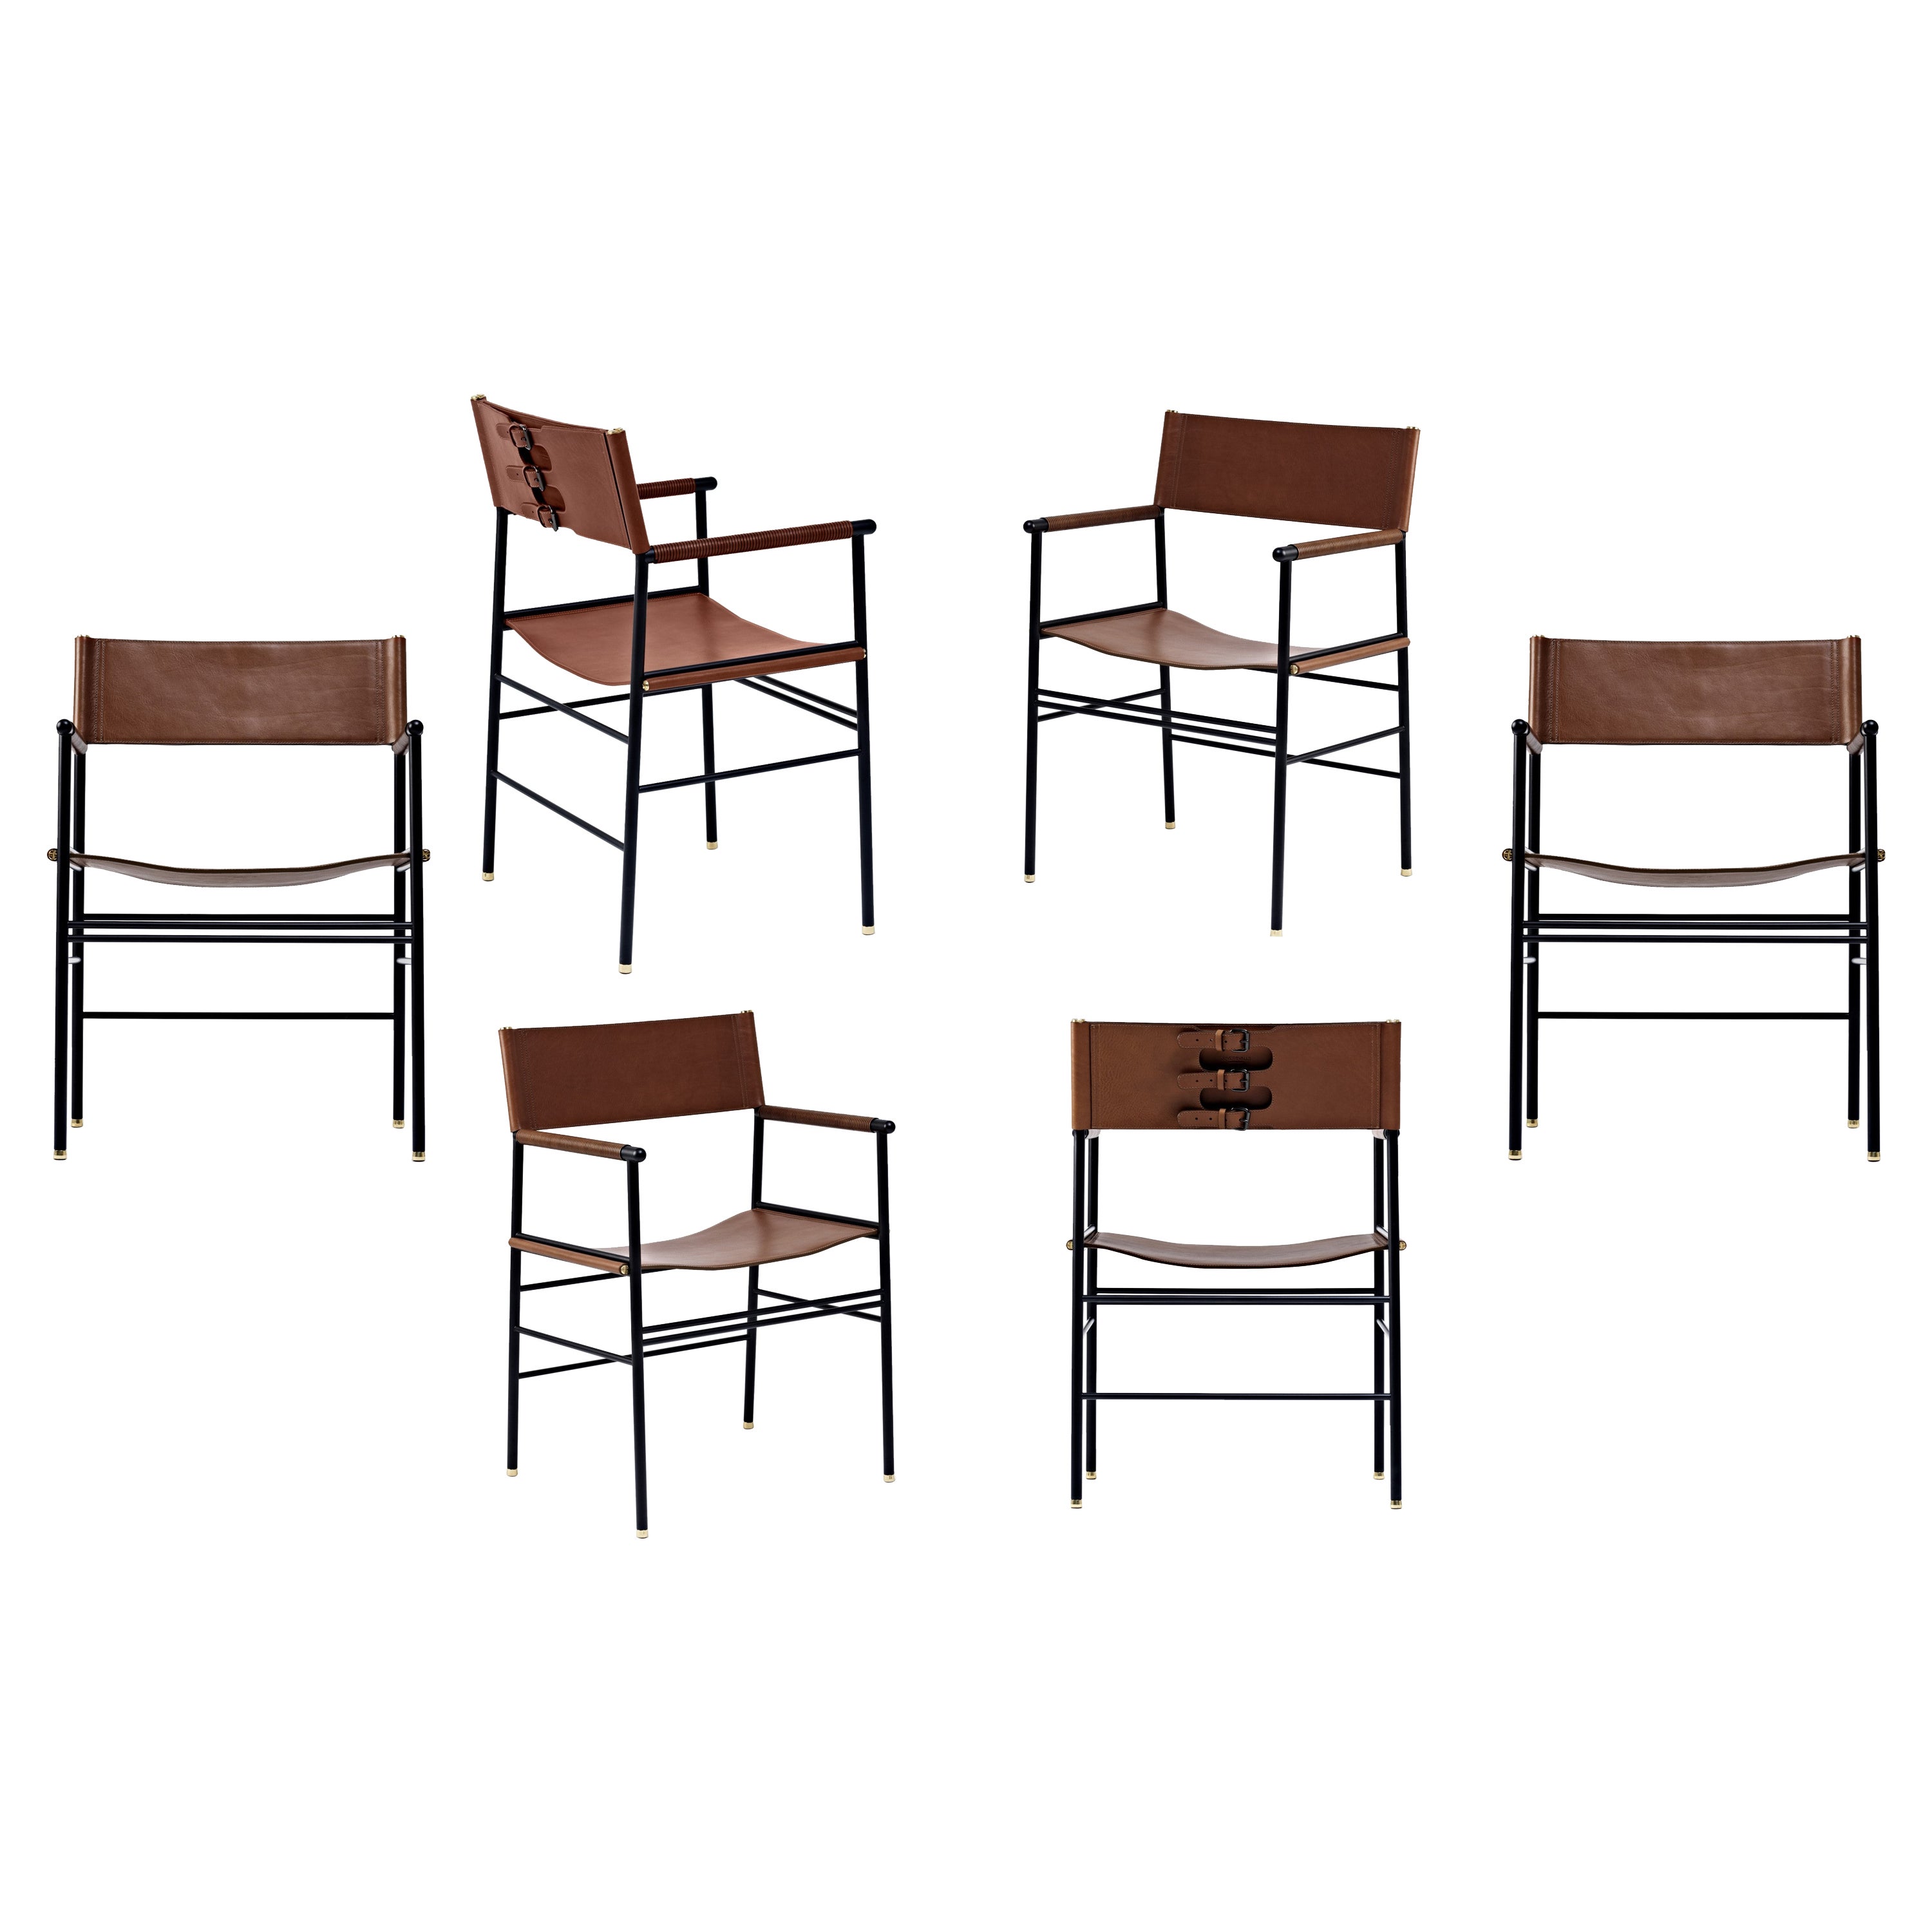 Ensemble de 6 chaises contemporaines classiques en cuir marron foncé et métal en caoutchouc noir